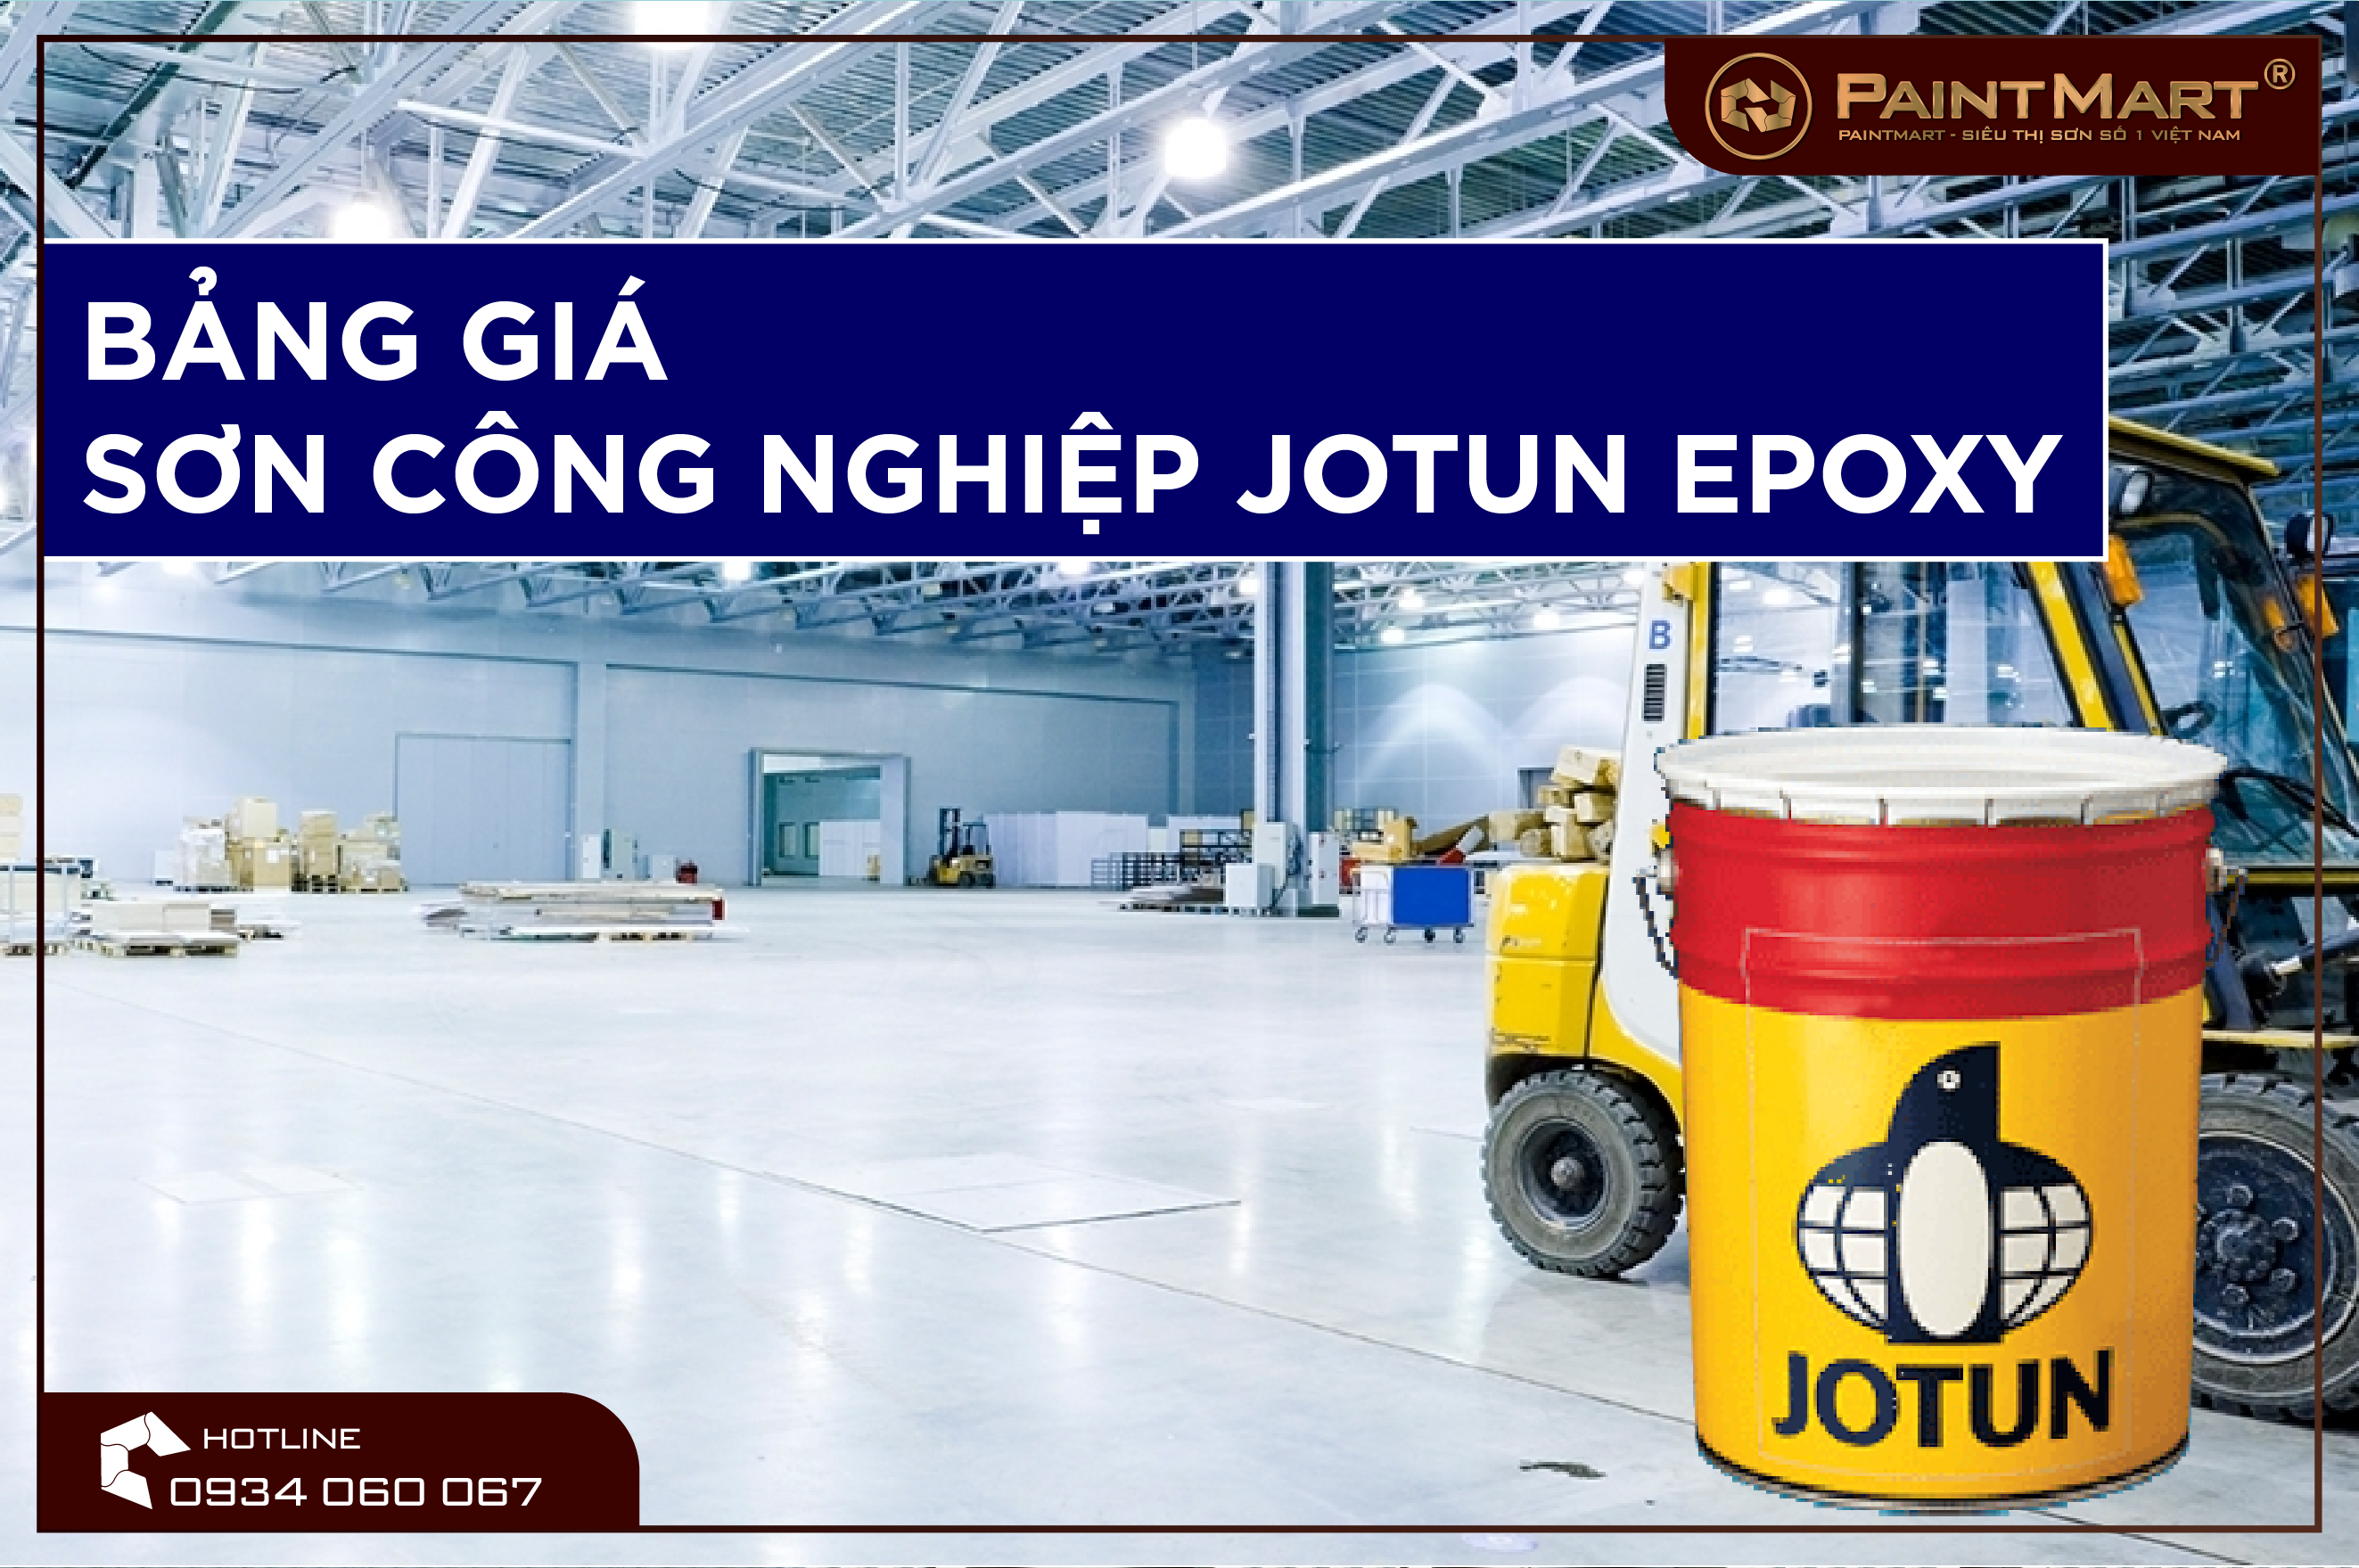 Sơn công nghiệp Jotun Epoxy: Chỉ với một lần xem hình ảnh của sơn công nghiệp Jotun Epoxy, bạn sẽ hiểu tại sao sản phẩm này được ưa chuộng nhất trong lĩnh vực sơn công nghiệp. Hãy khám phá các tính năng và ứng dụng của sản phẩm này ngay lập tức.